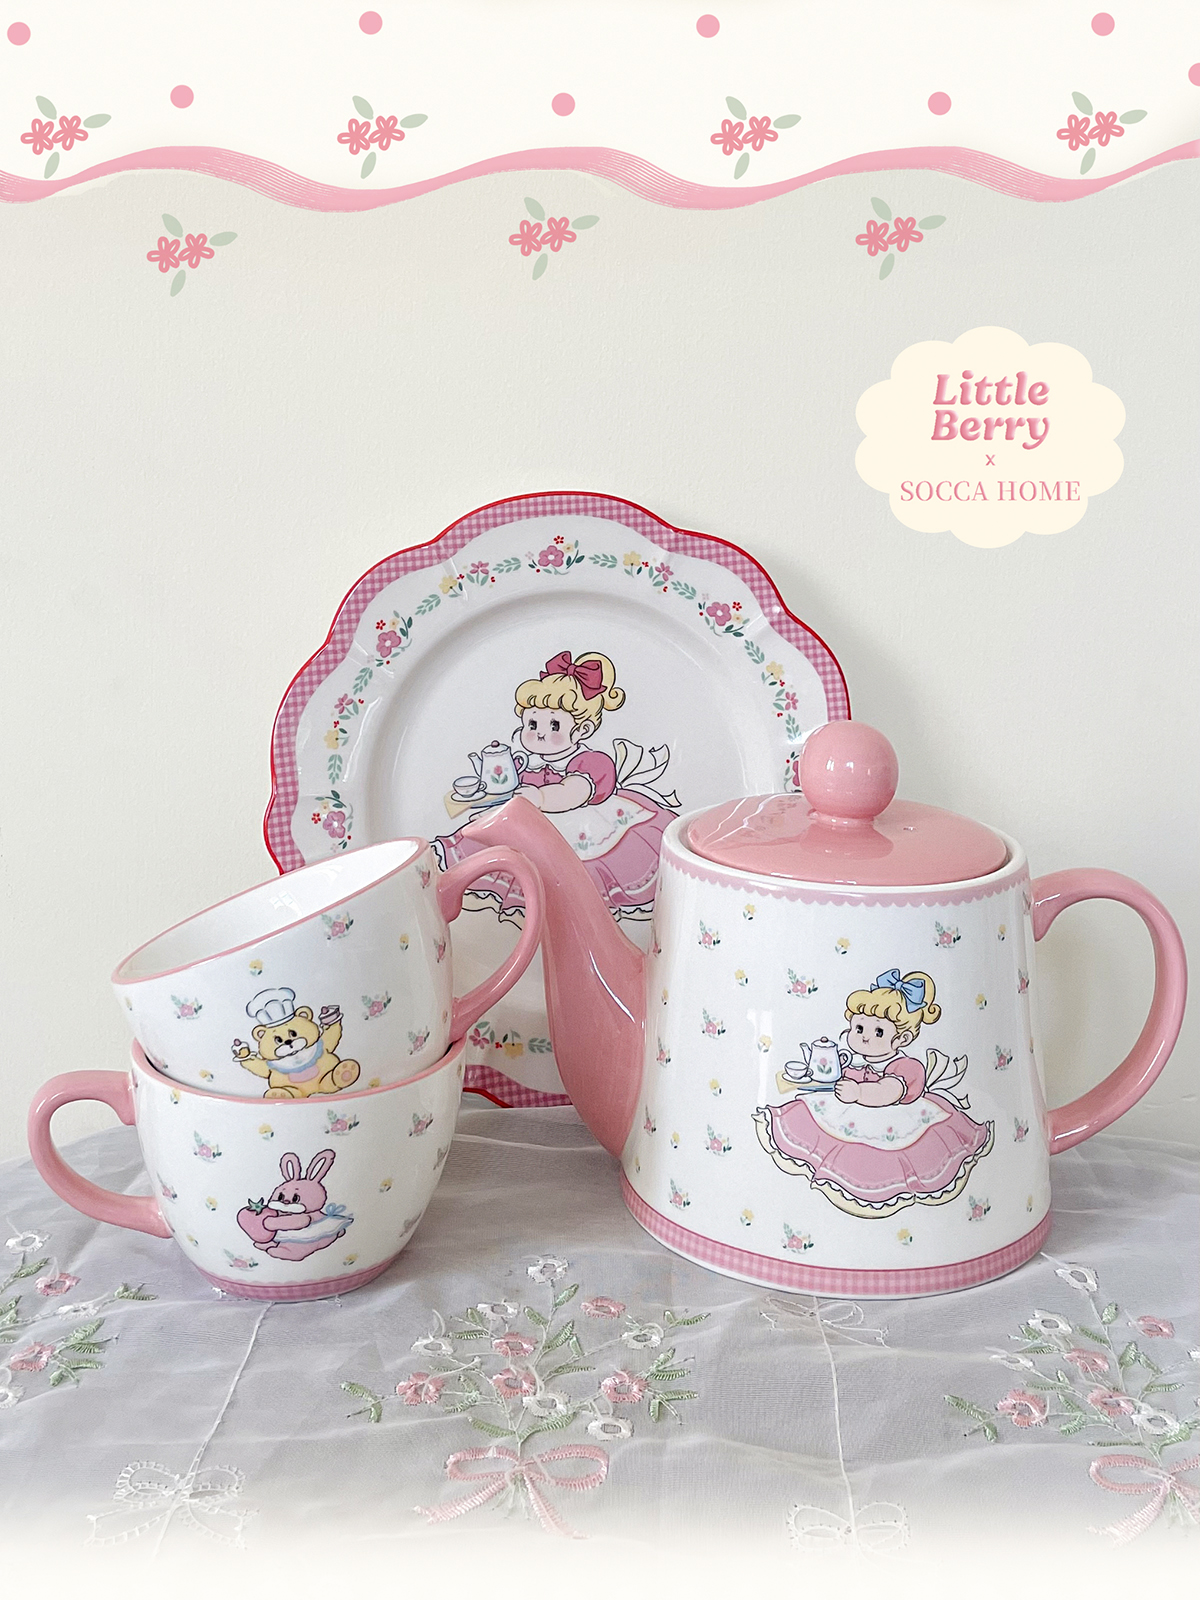 聖誕禮物禮盒粉色可愛少女陶瓷胖茶壺2杯子套裝組合禮品下午茶3件套裝 (8.3折)